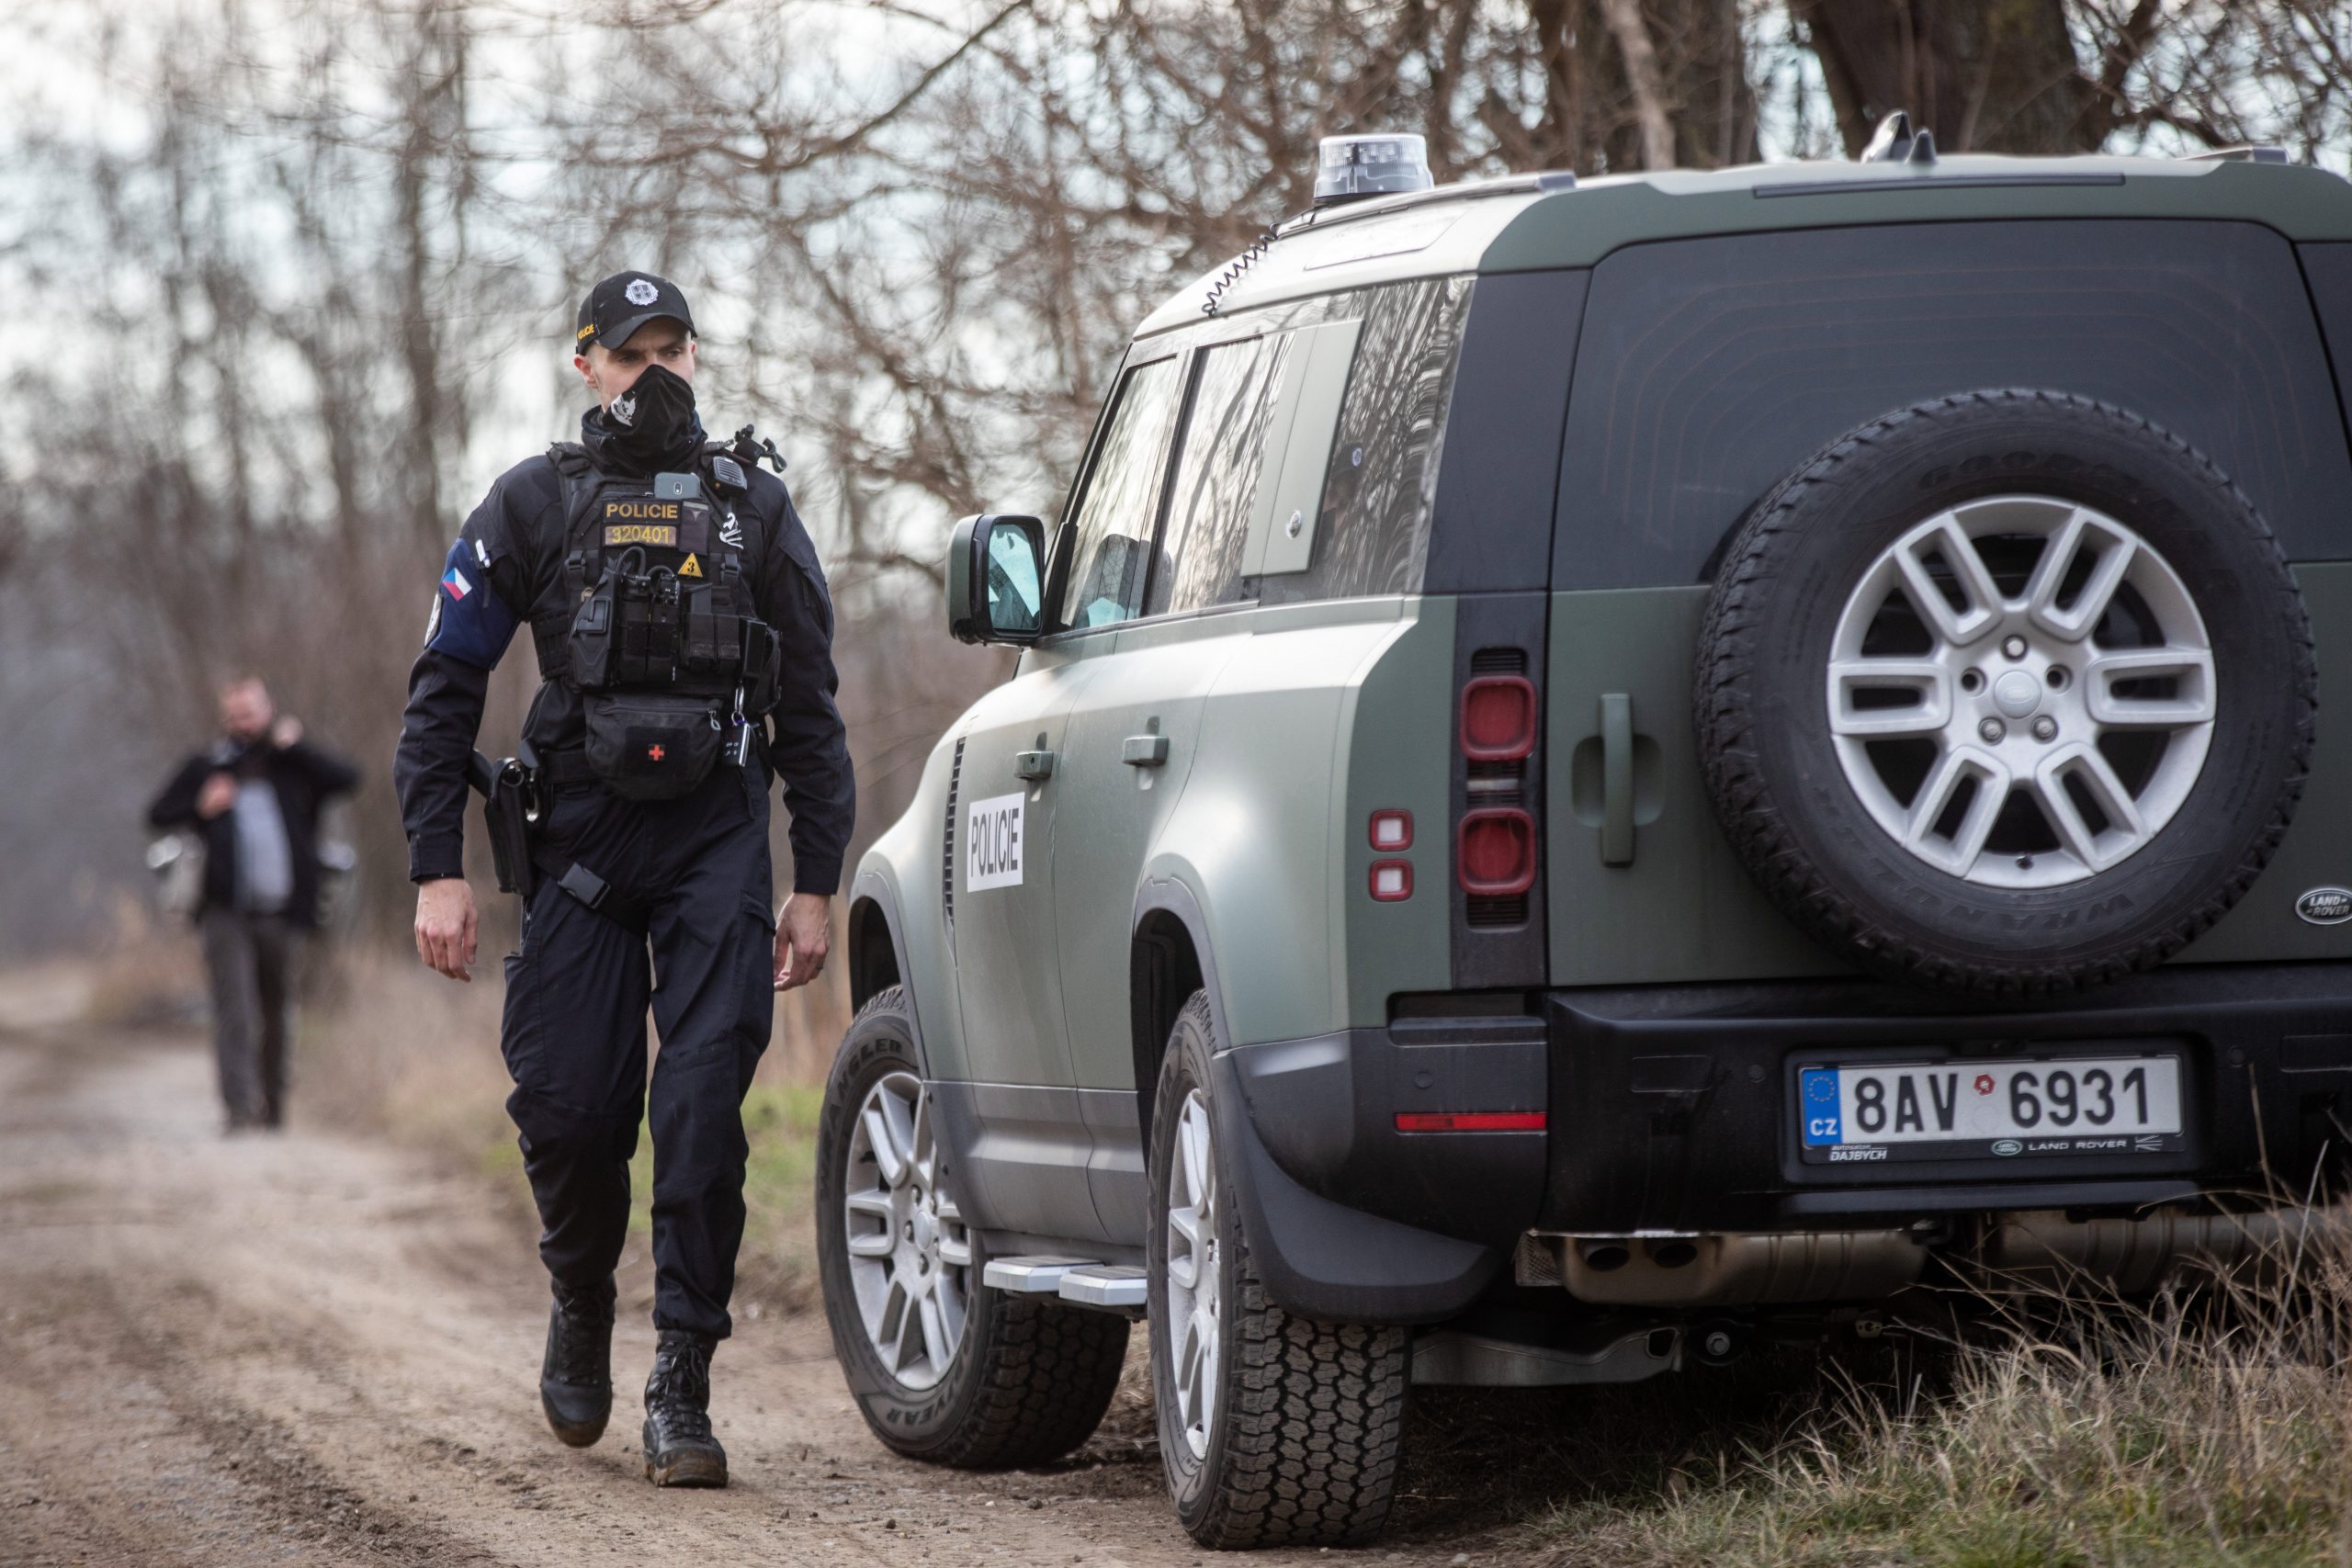 Kommandant der tschechischen Polizeieinheit: Migrationssituation an der ungarisch-serbischen Grenze ist äußerst ernst